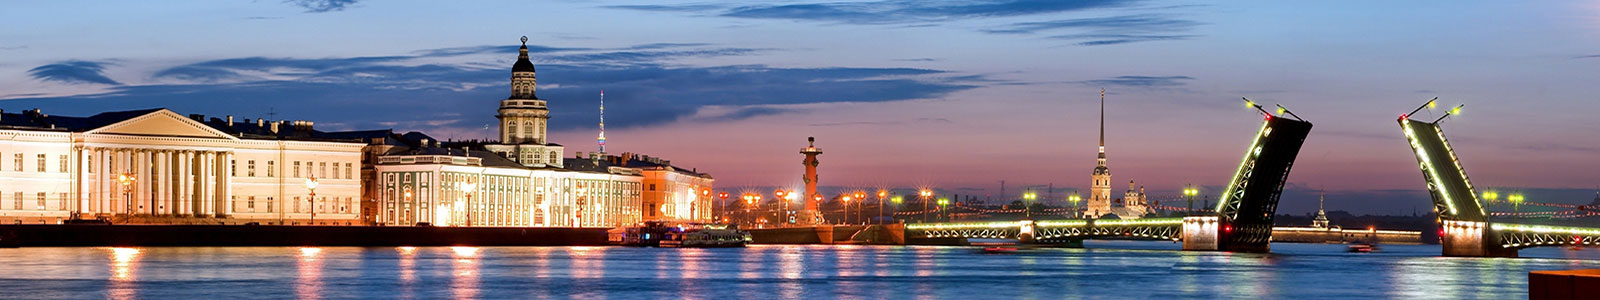 №1719 - Разводной мост в Санкт-Петербурге 